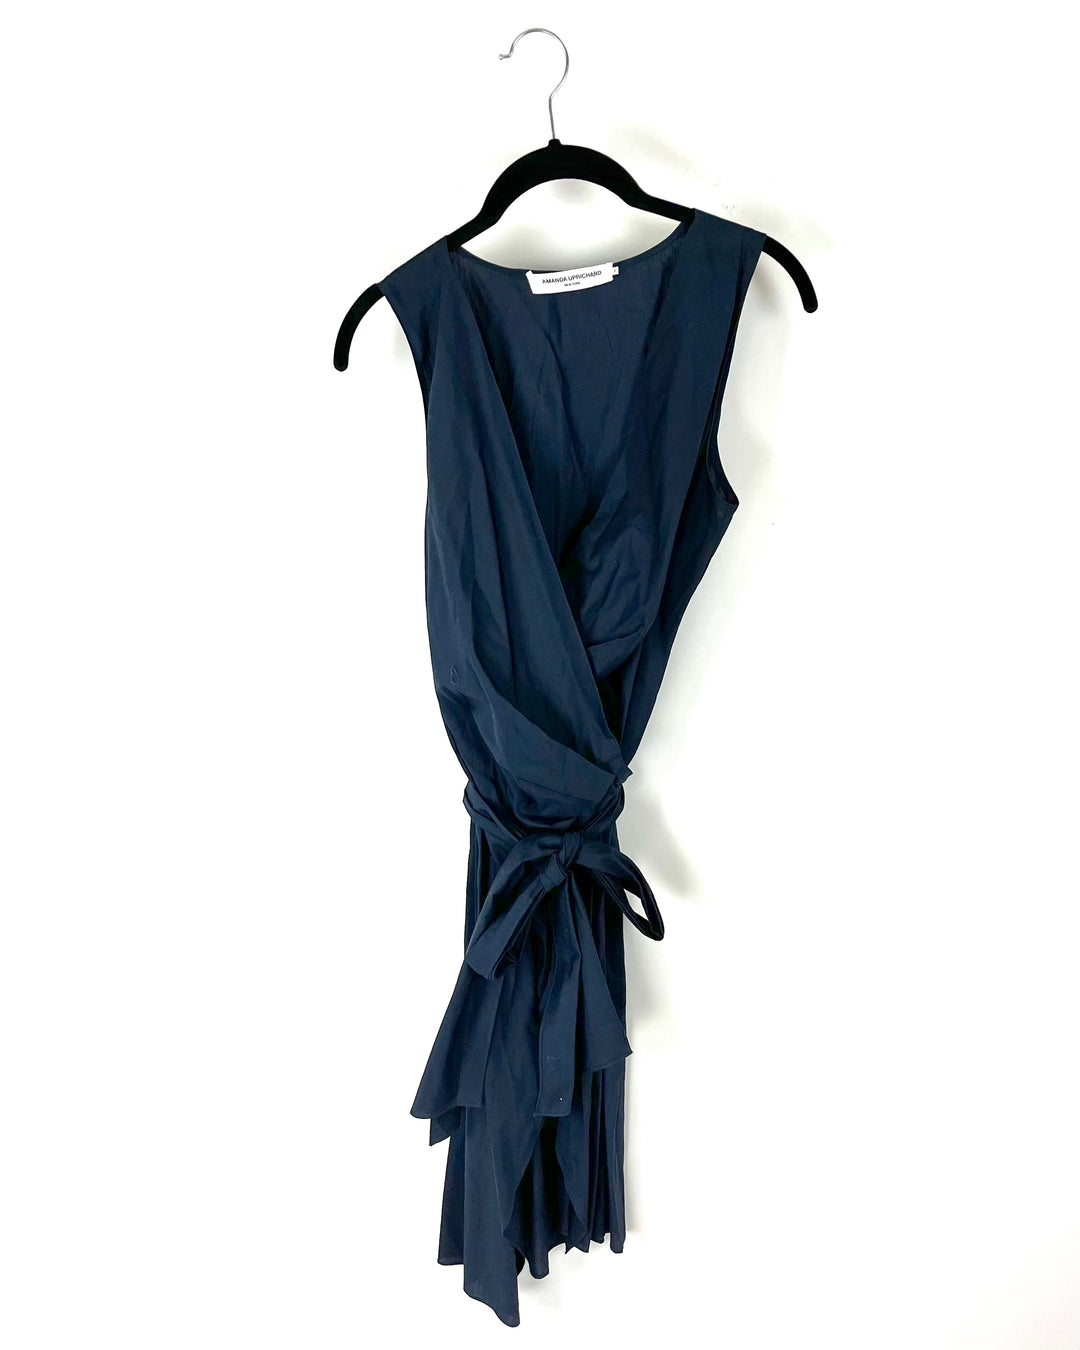 Navy Blue Wrap Around Dress - Size 4/6